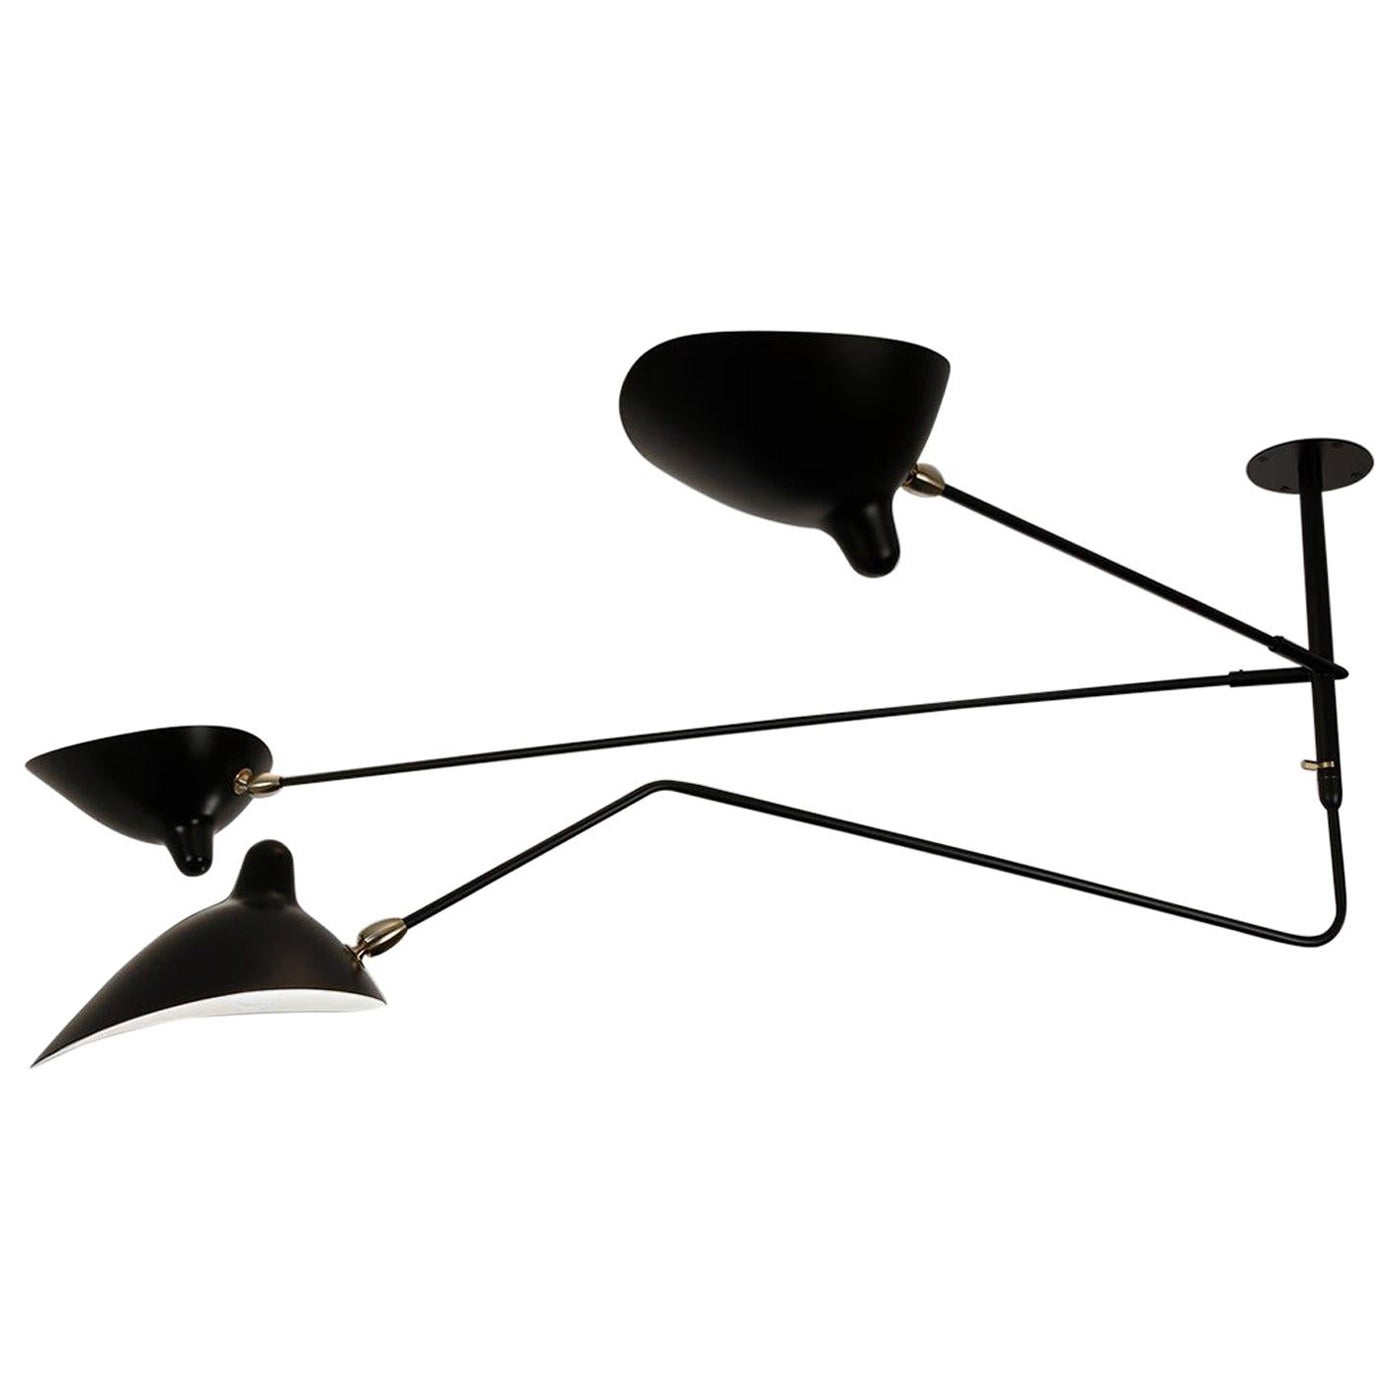 Serge Mouille lampe noire « Suspension » à deux bras incurvés rotatifs et un rotatif